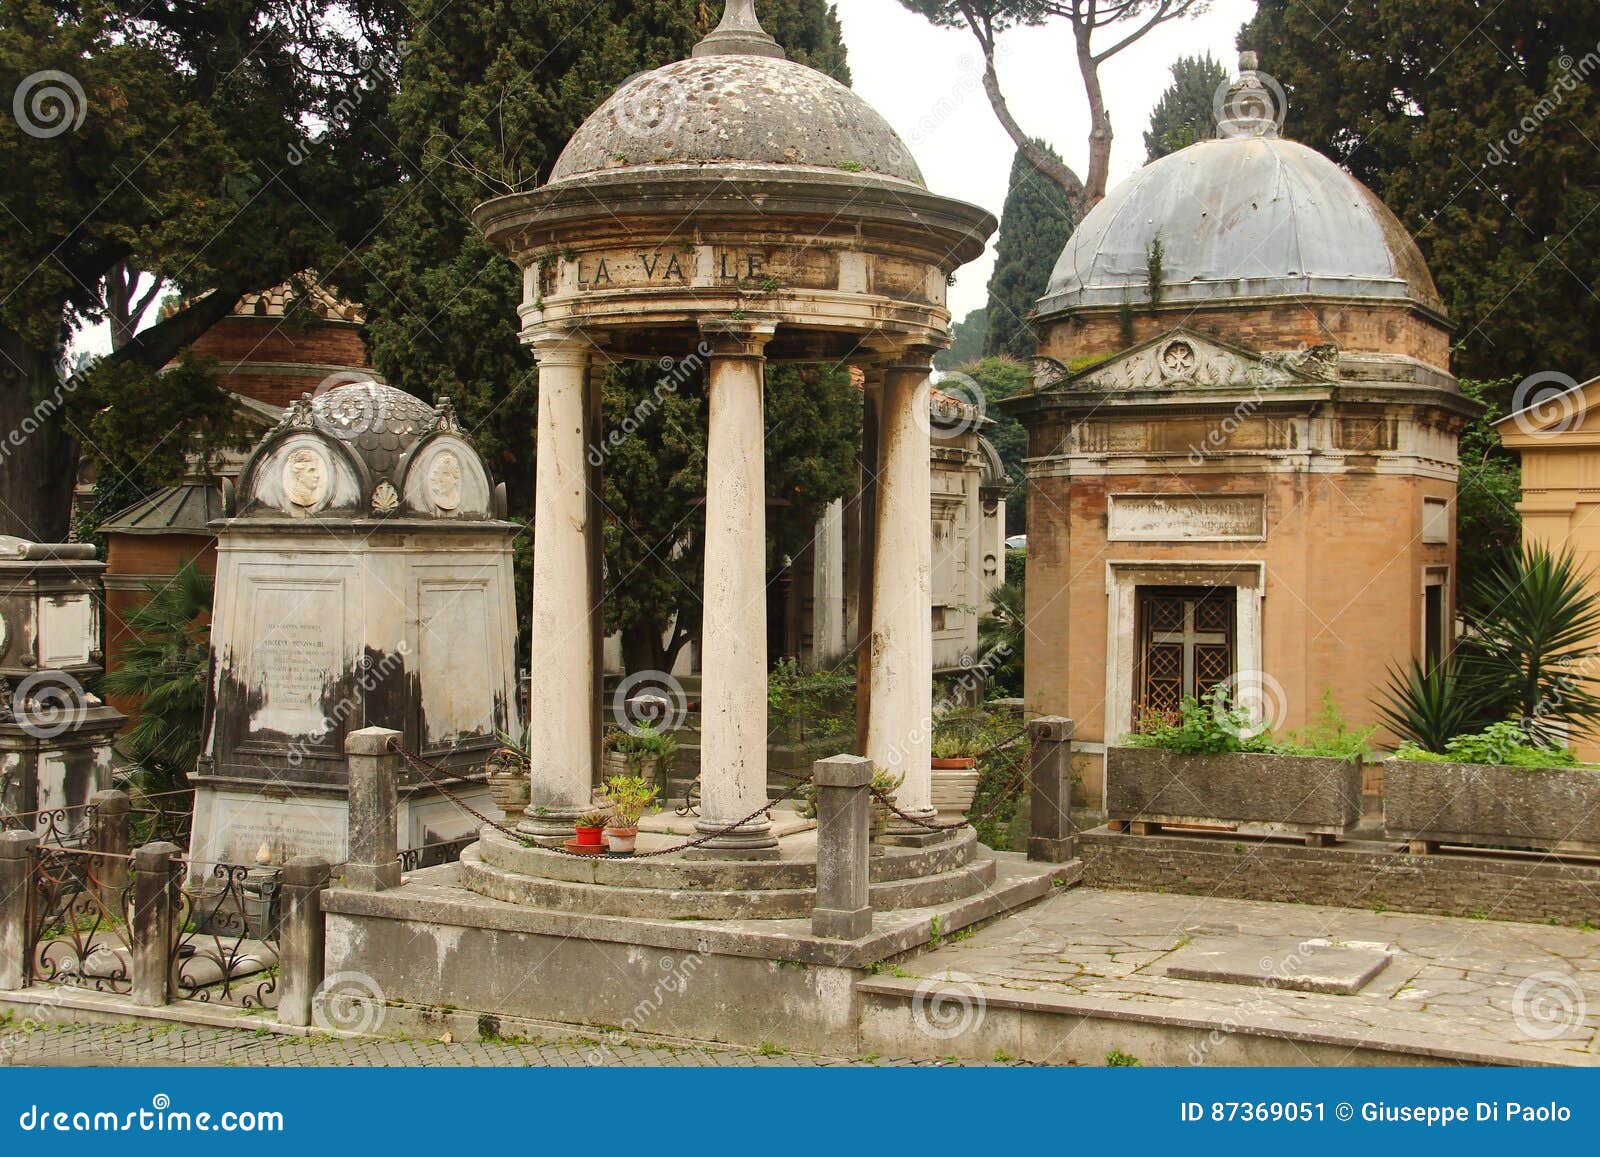 campo verano cemetery in rome